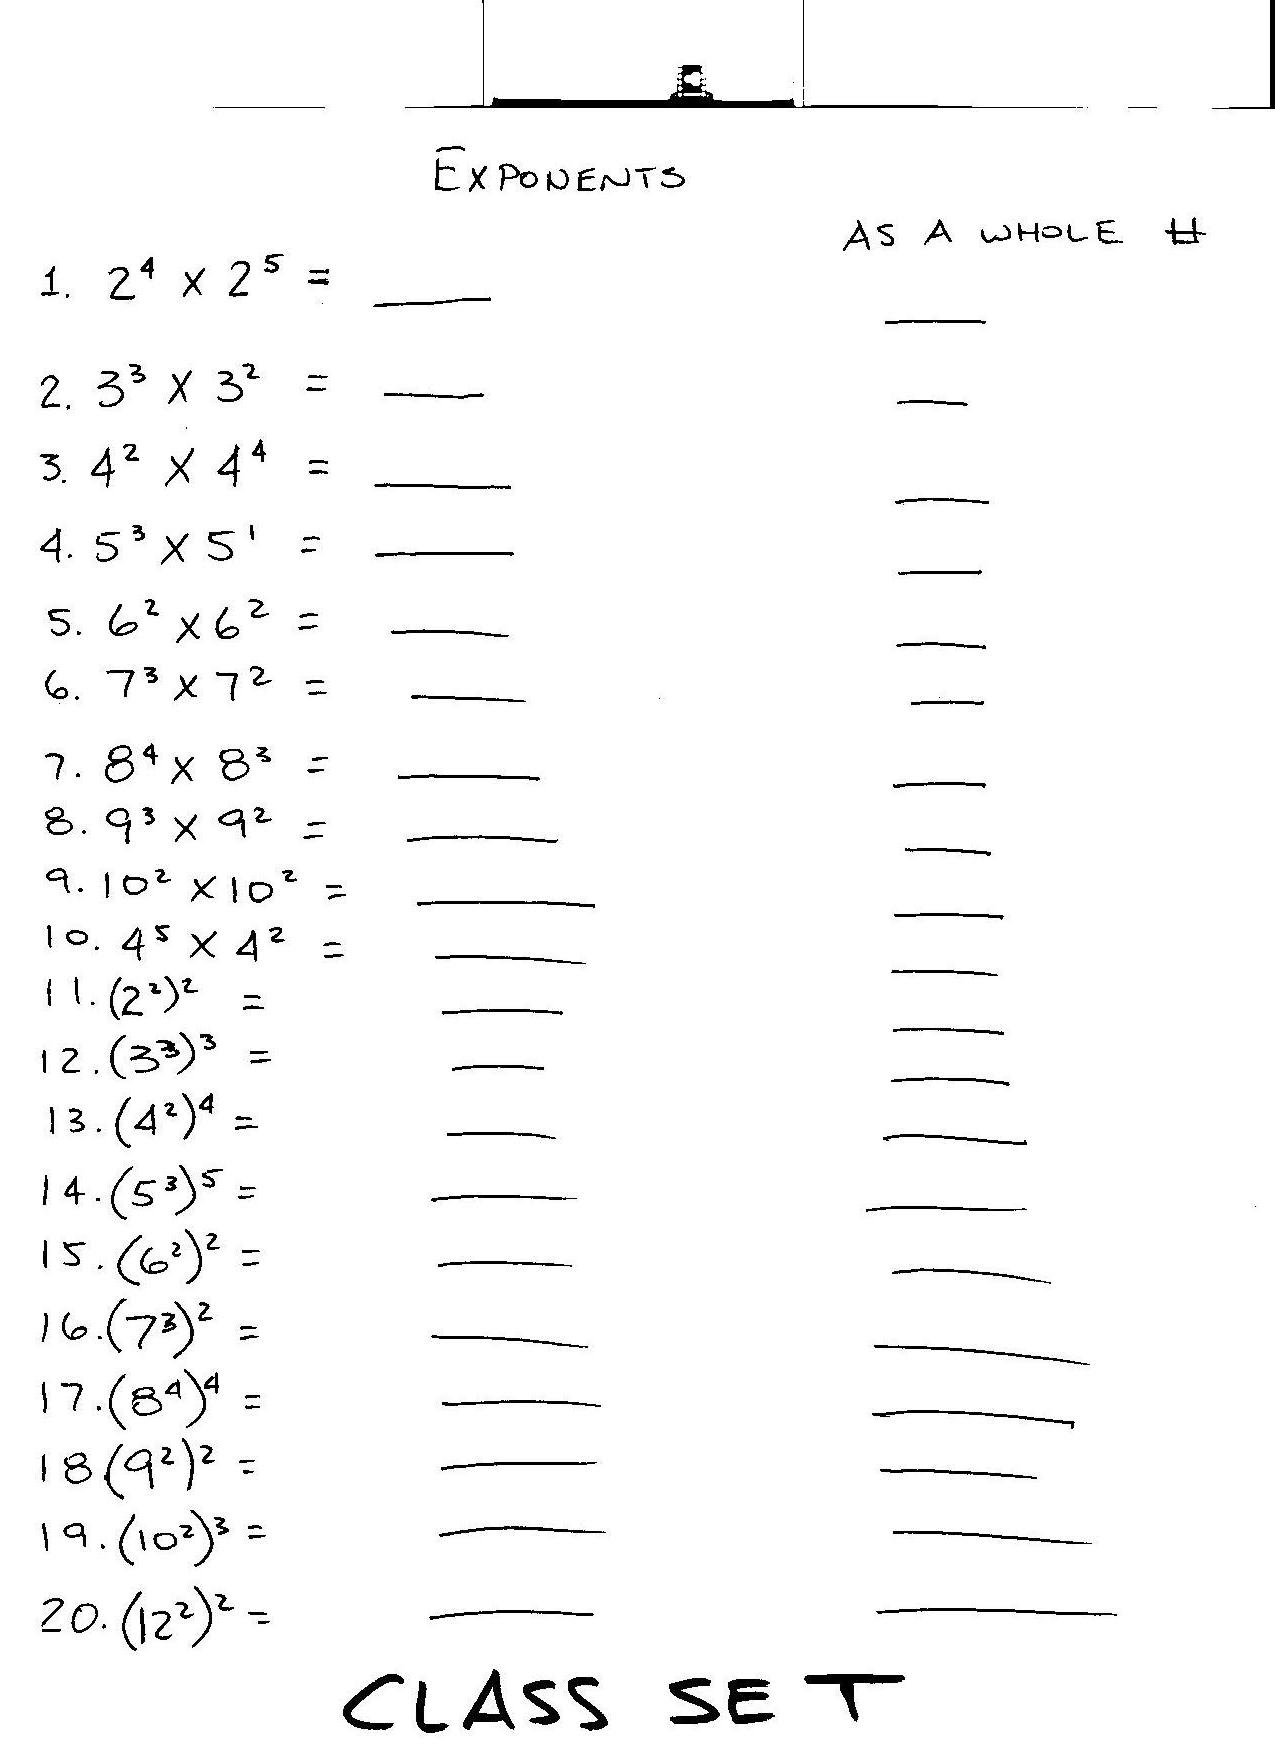 8th Grade Math Worksheets Exponents Image